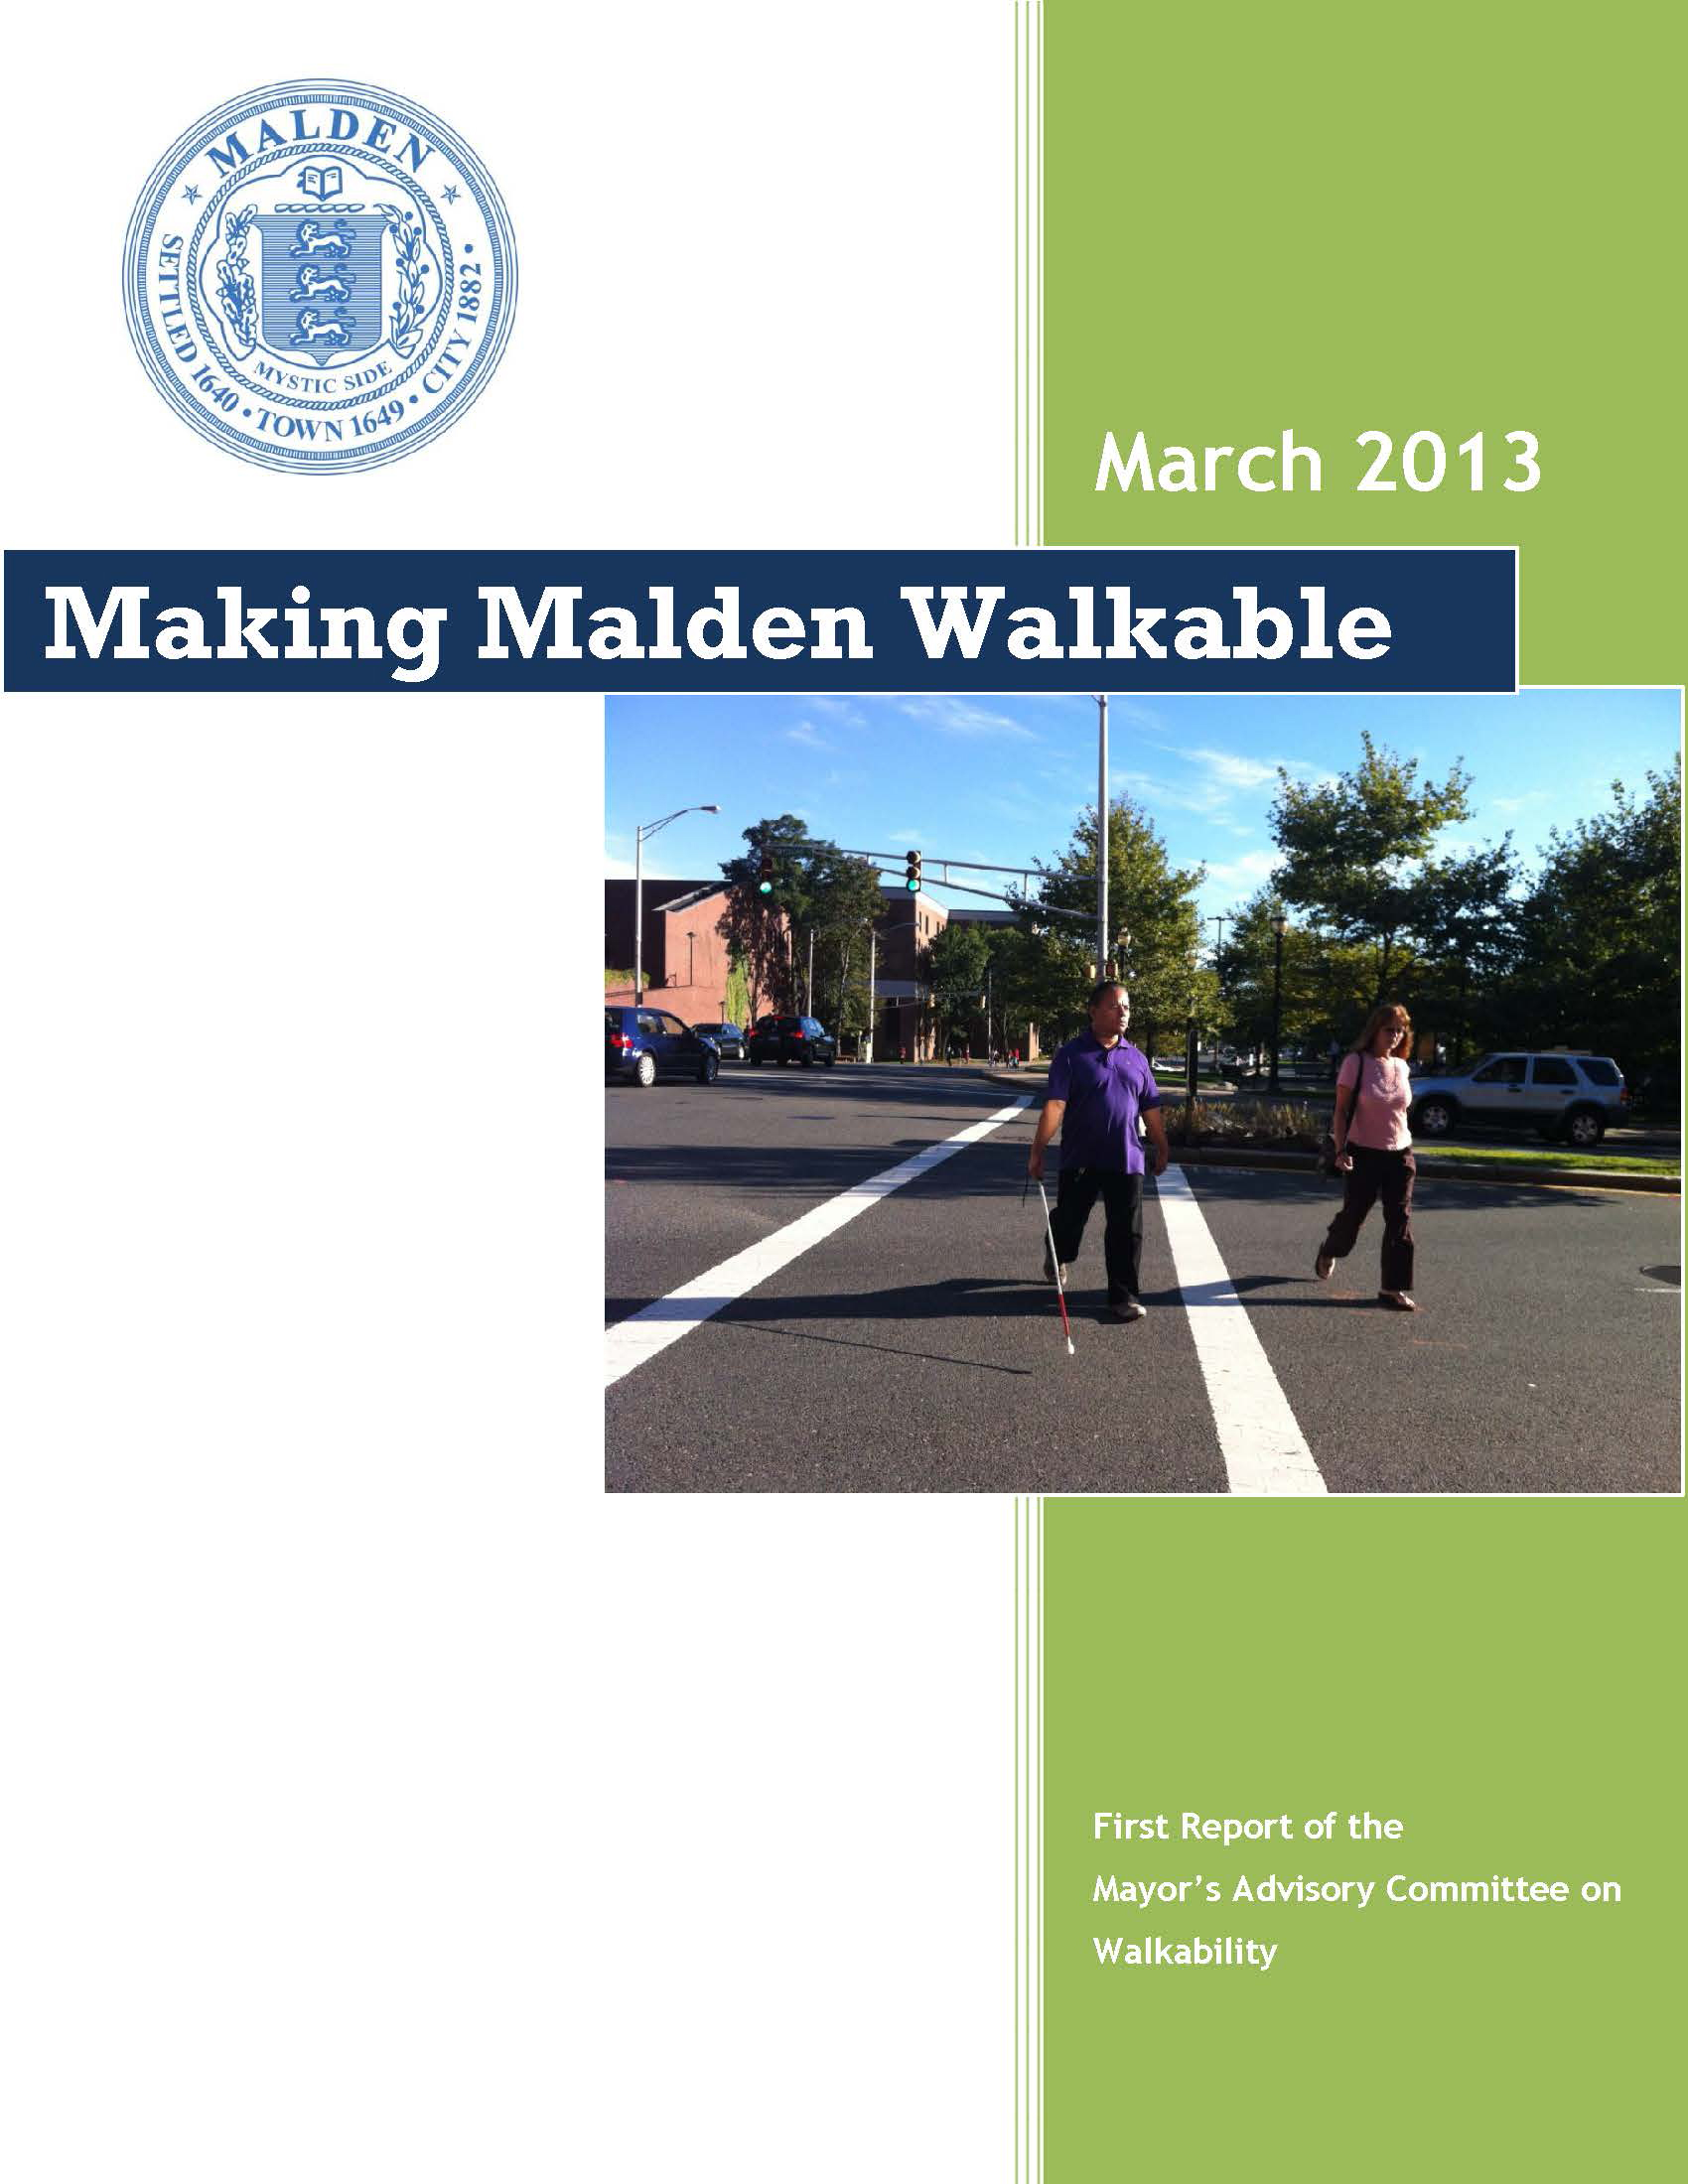 Malden Walkability Committee Report